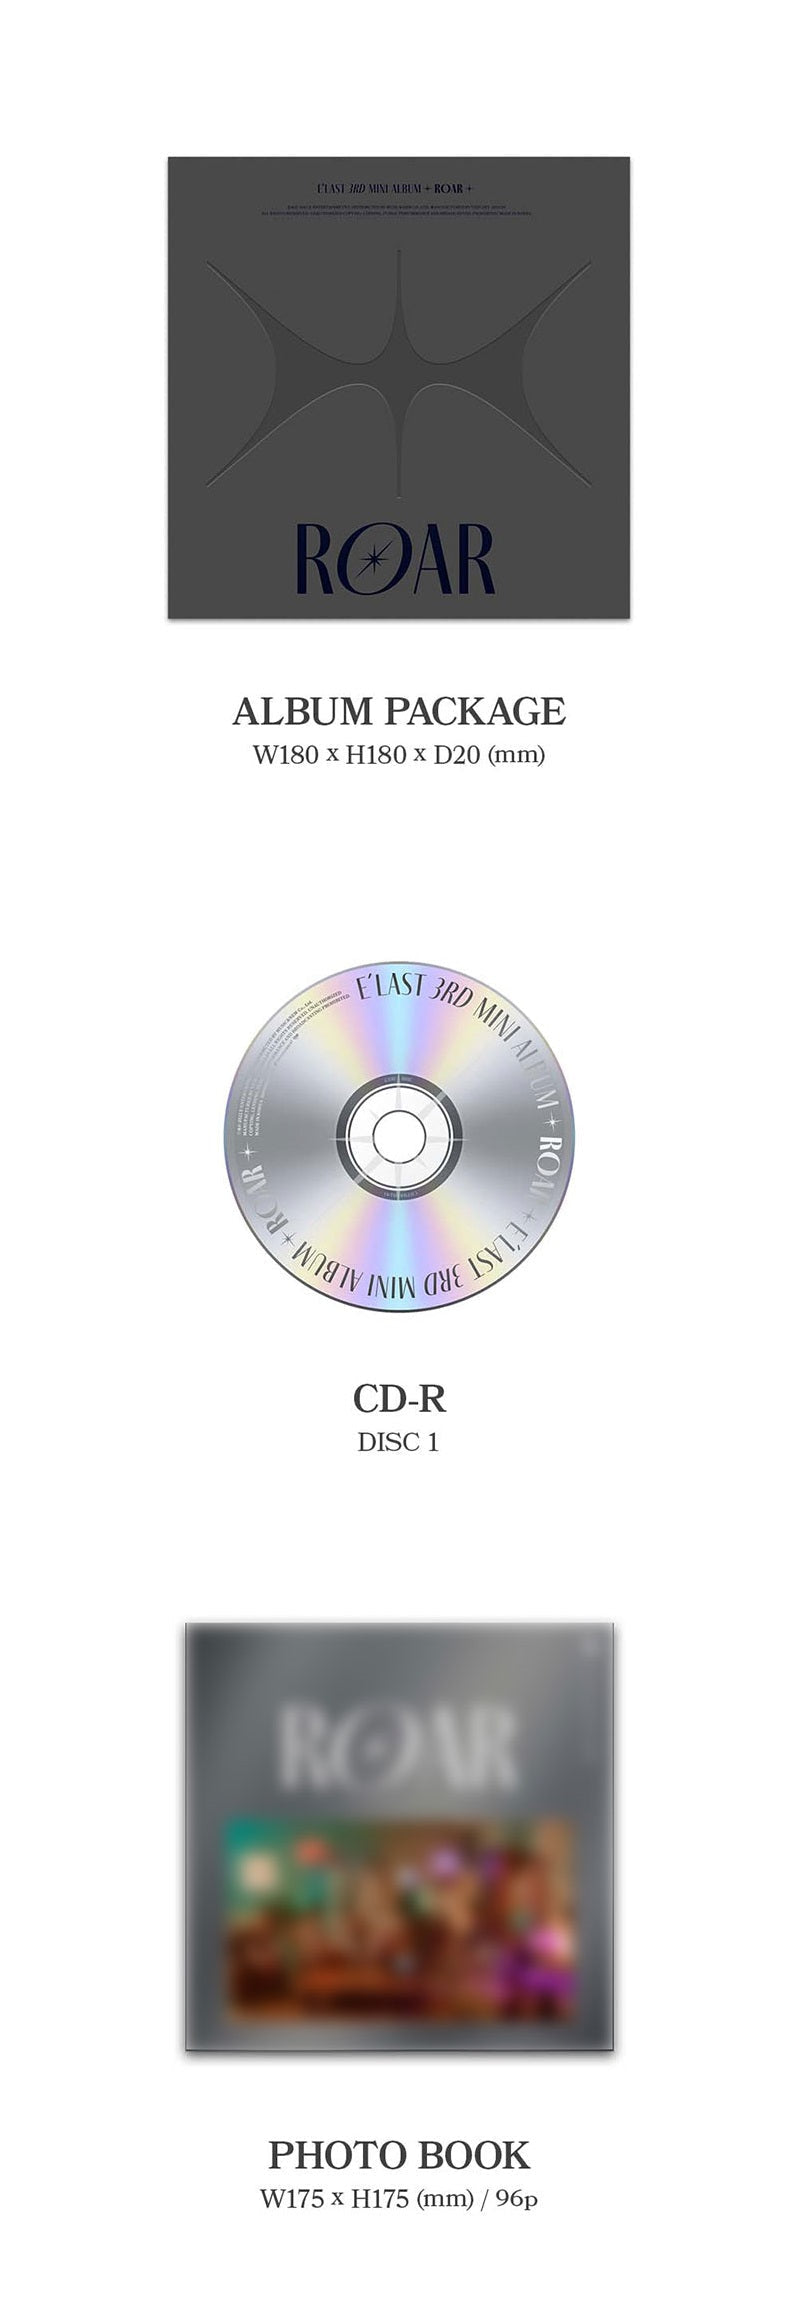 [PREORDER] E'LAST - SIGNED ALBUM ROAR (3RD MINI ALBUM) GRAY VER